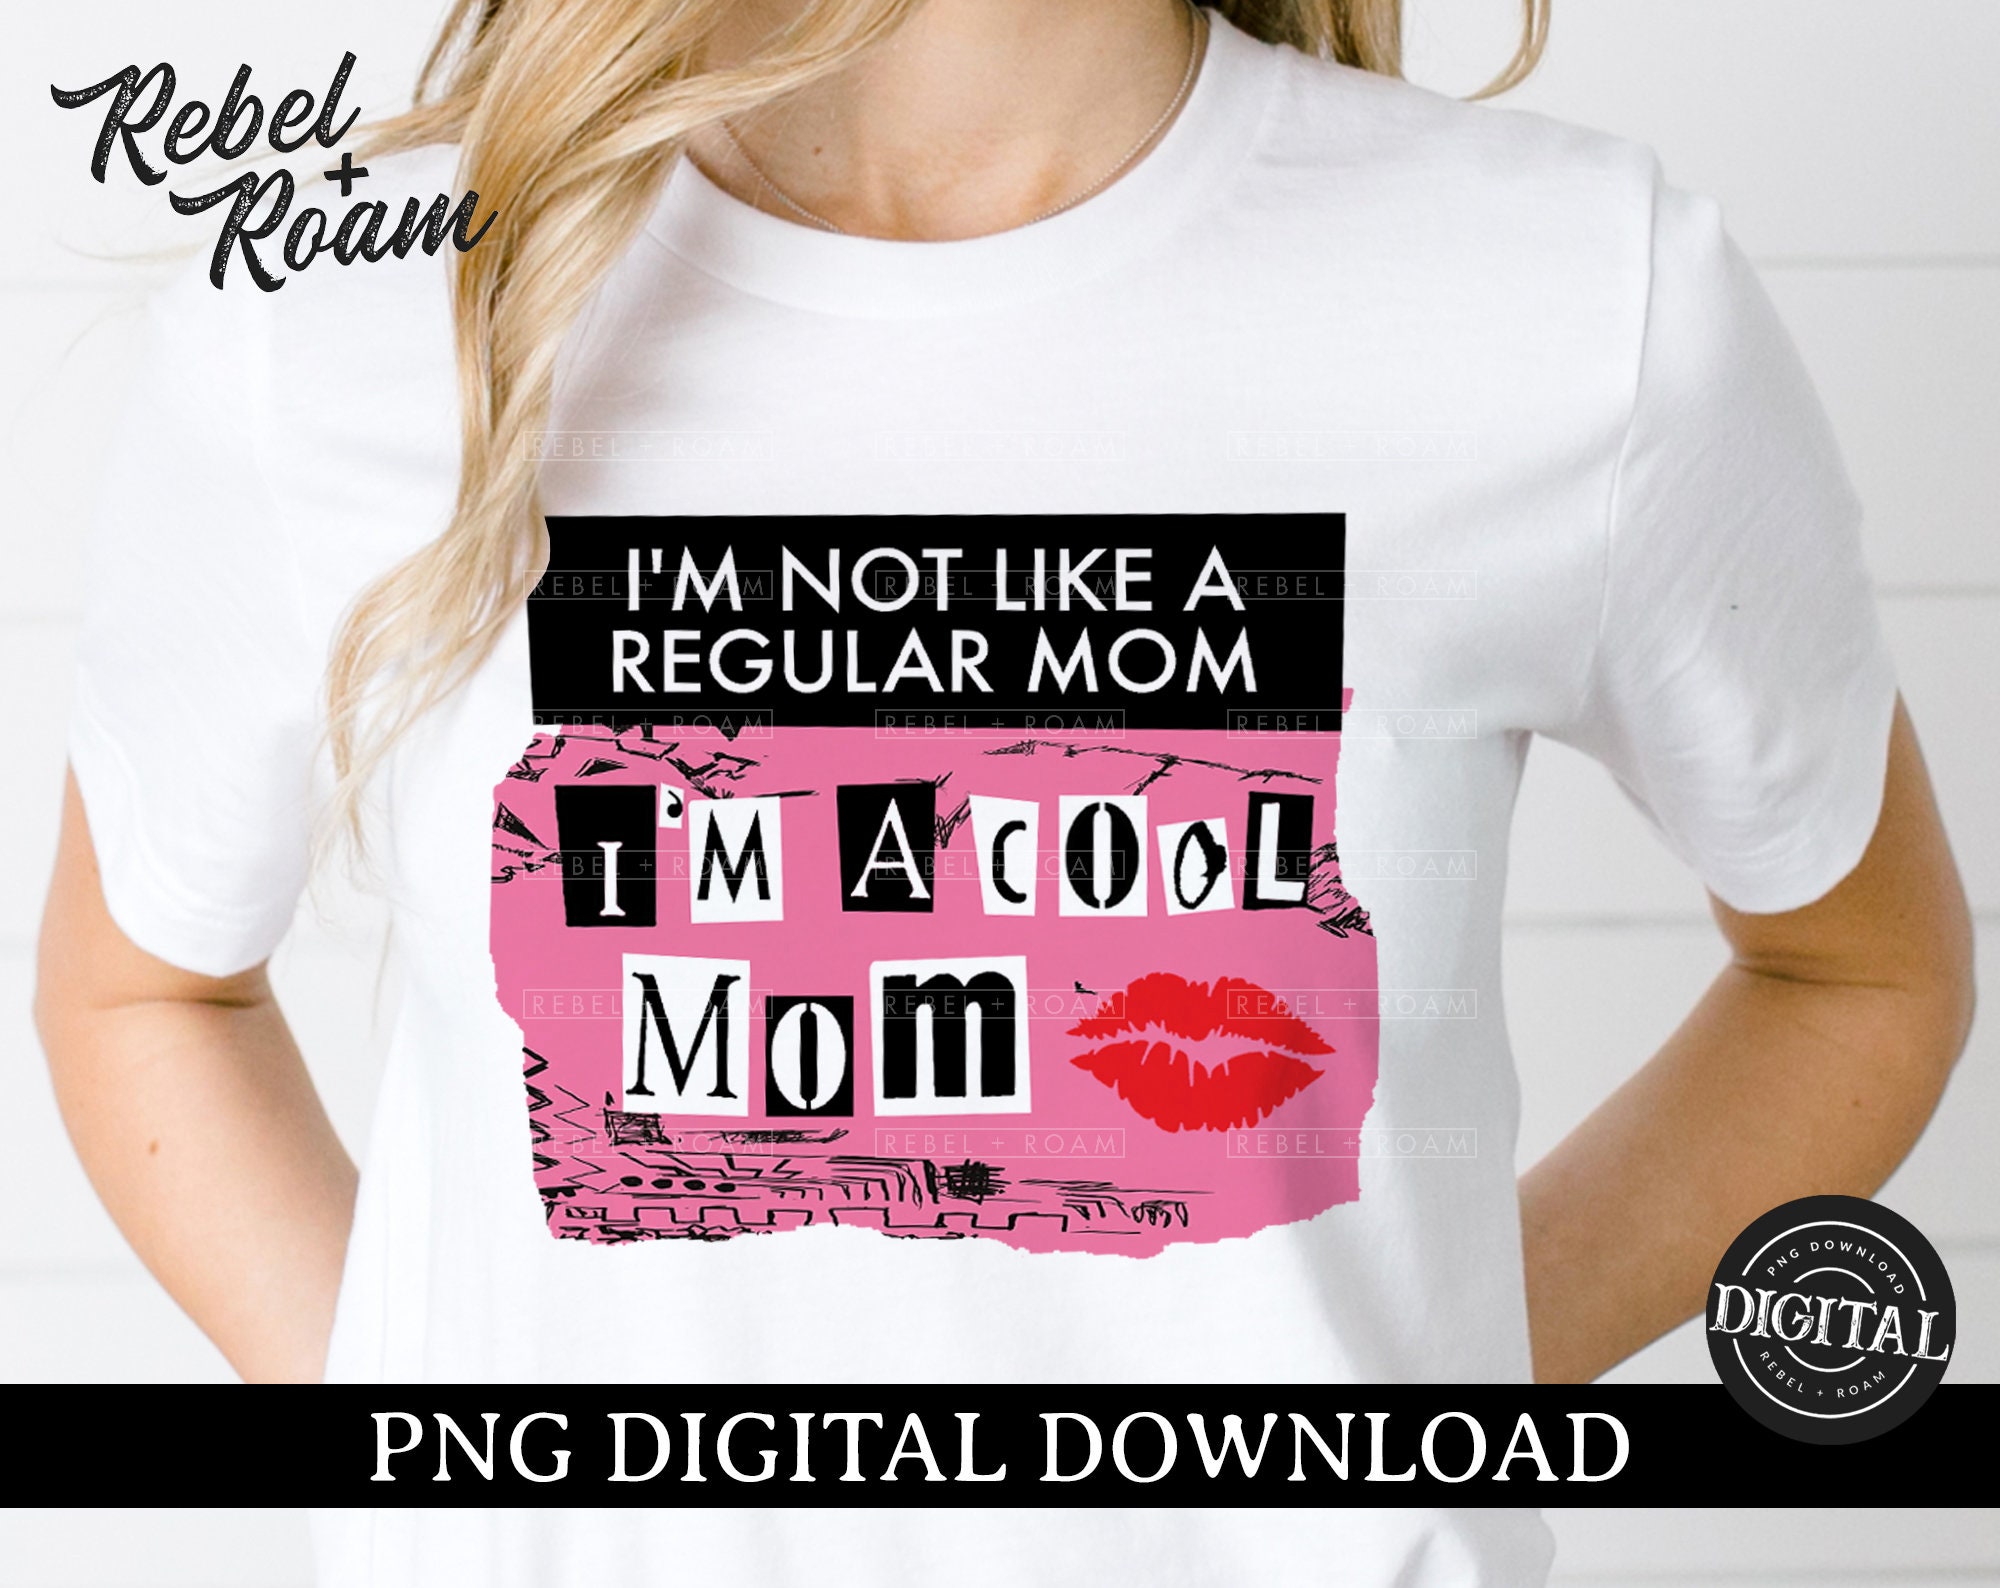 I'm A Cool Mom PNG Mean Girls Burn Book Design Digital | Etsy